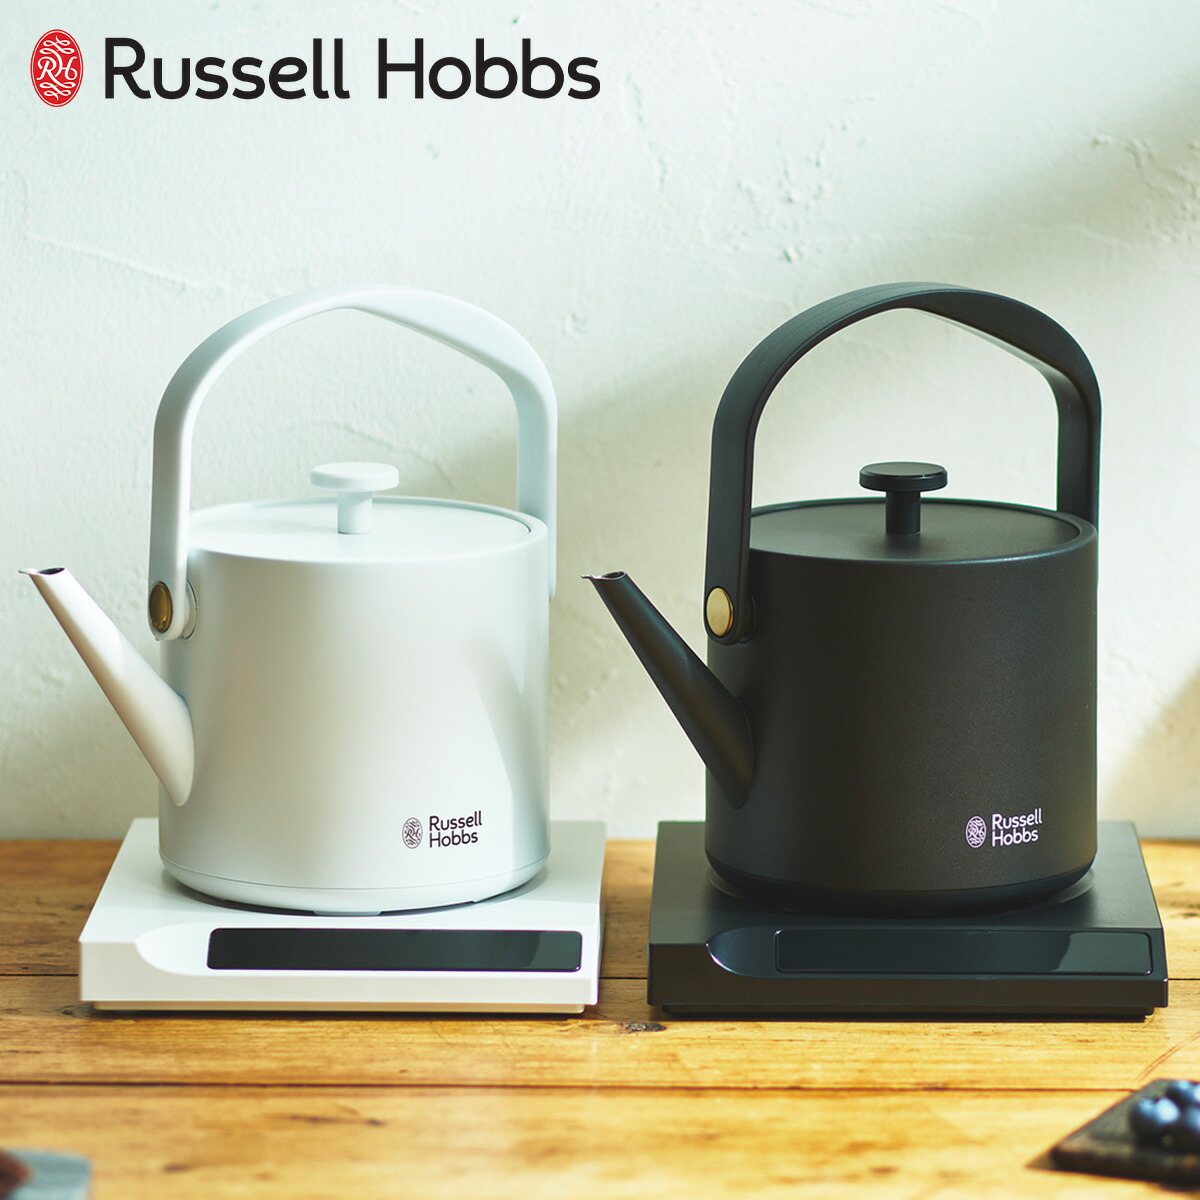 ラッセルホブス Russell Hobbs 電気ケトル Tケトル 温度調整電気ケトル 湯沸かし器 0.6L 保温 コーヒー 軽量 一人暮らし キッチン 家電 7106JP